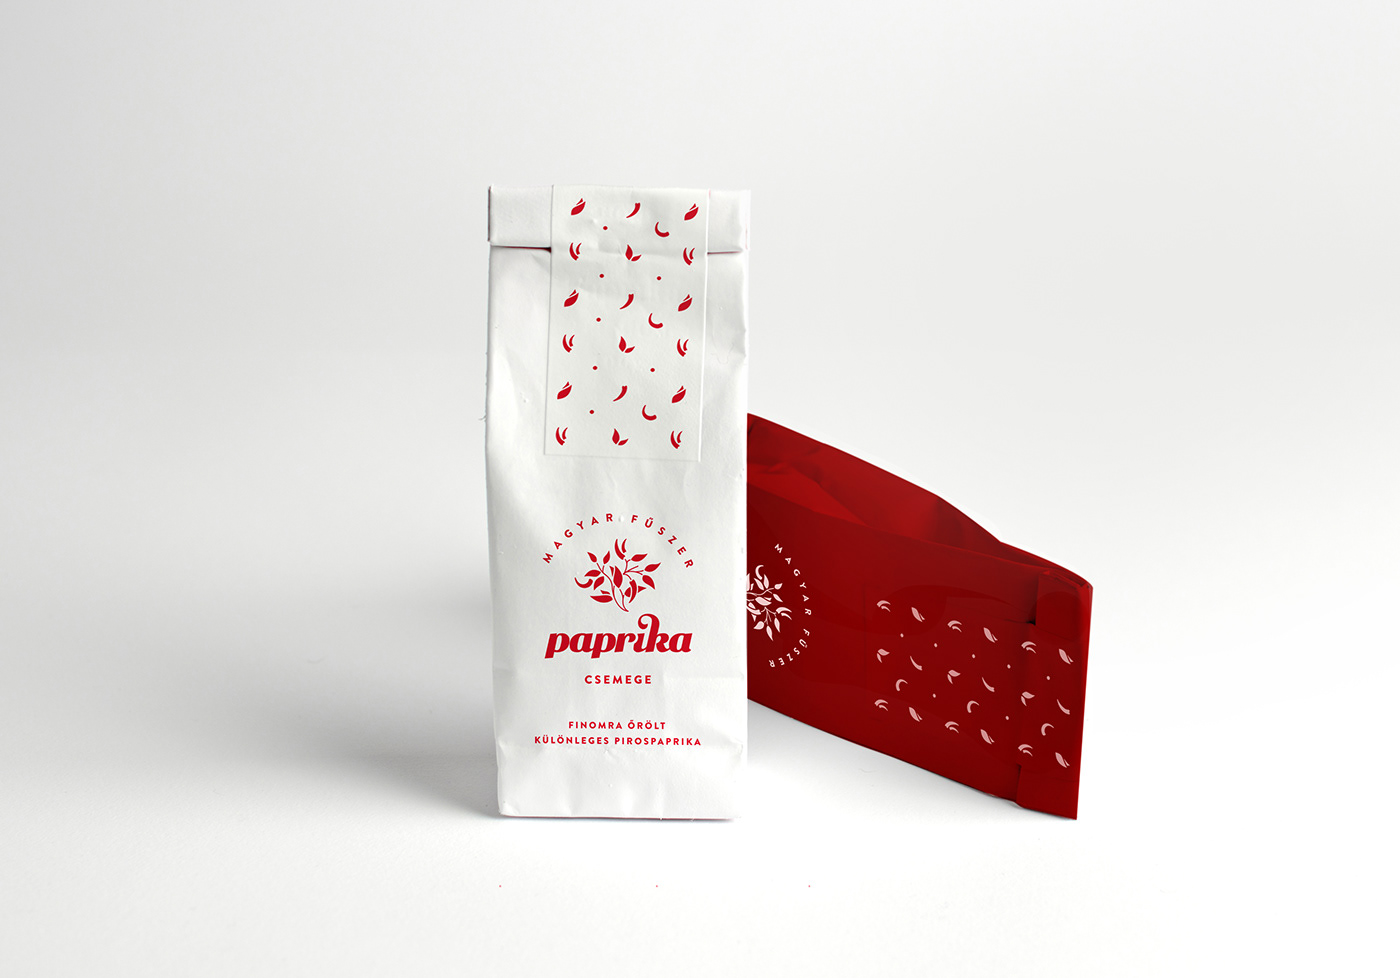 Paprika magyar fűszer paprika csomagolás package paprika csomagolás package design  hungary hungarikum